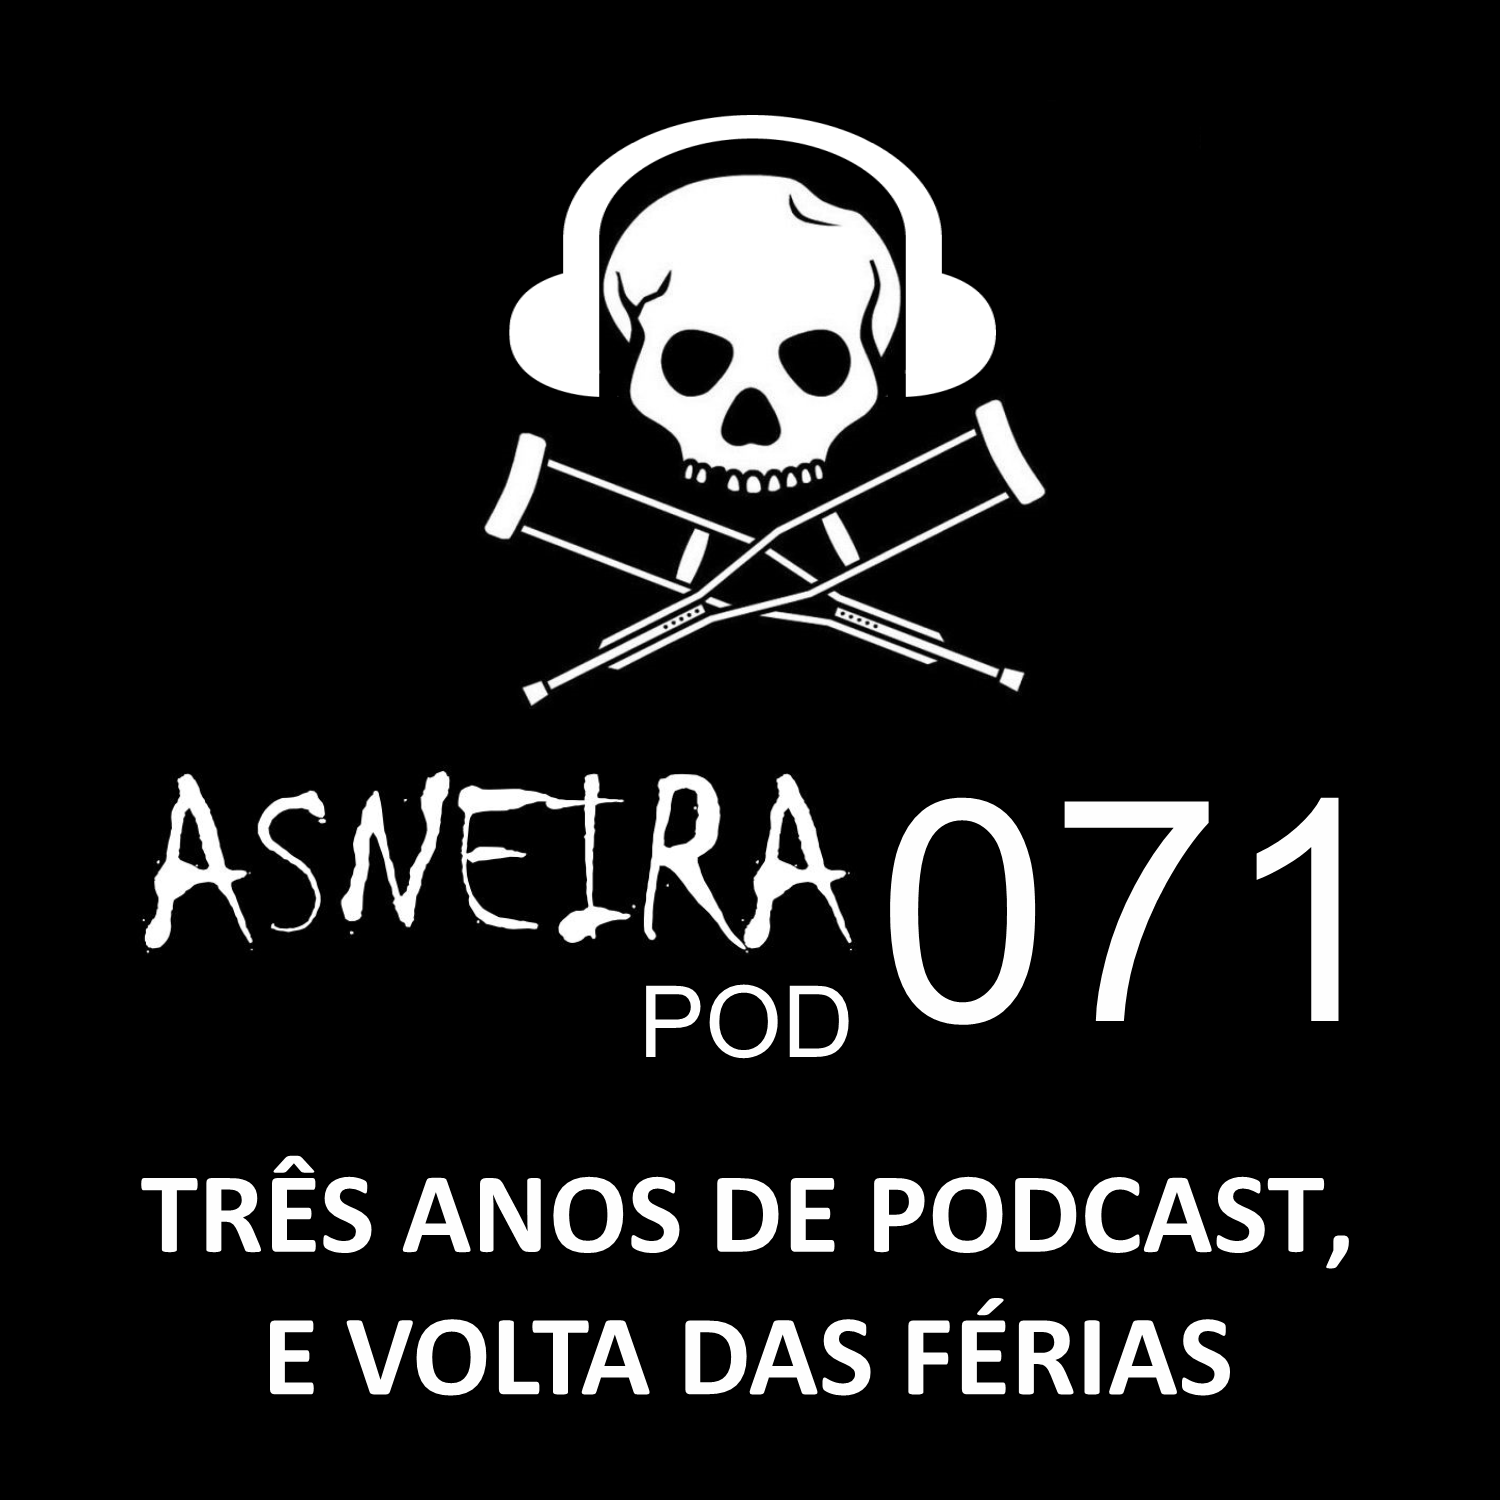 AsneiraPOD 071 – Três anos de podcast, e volta das férias